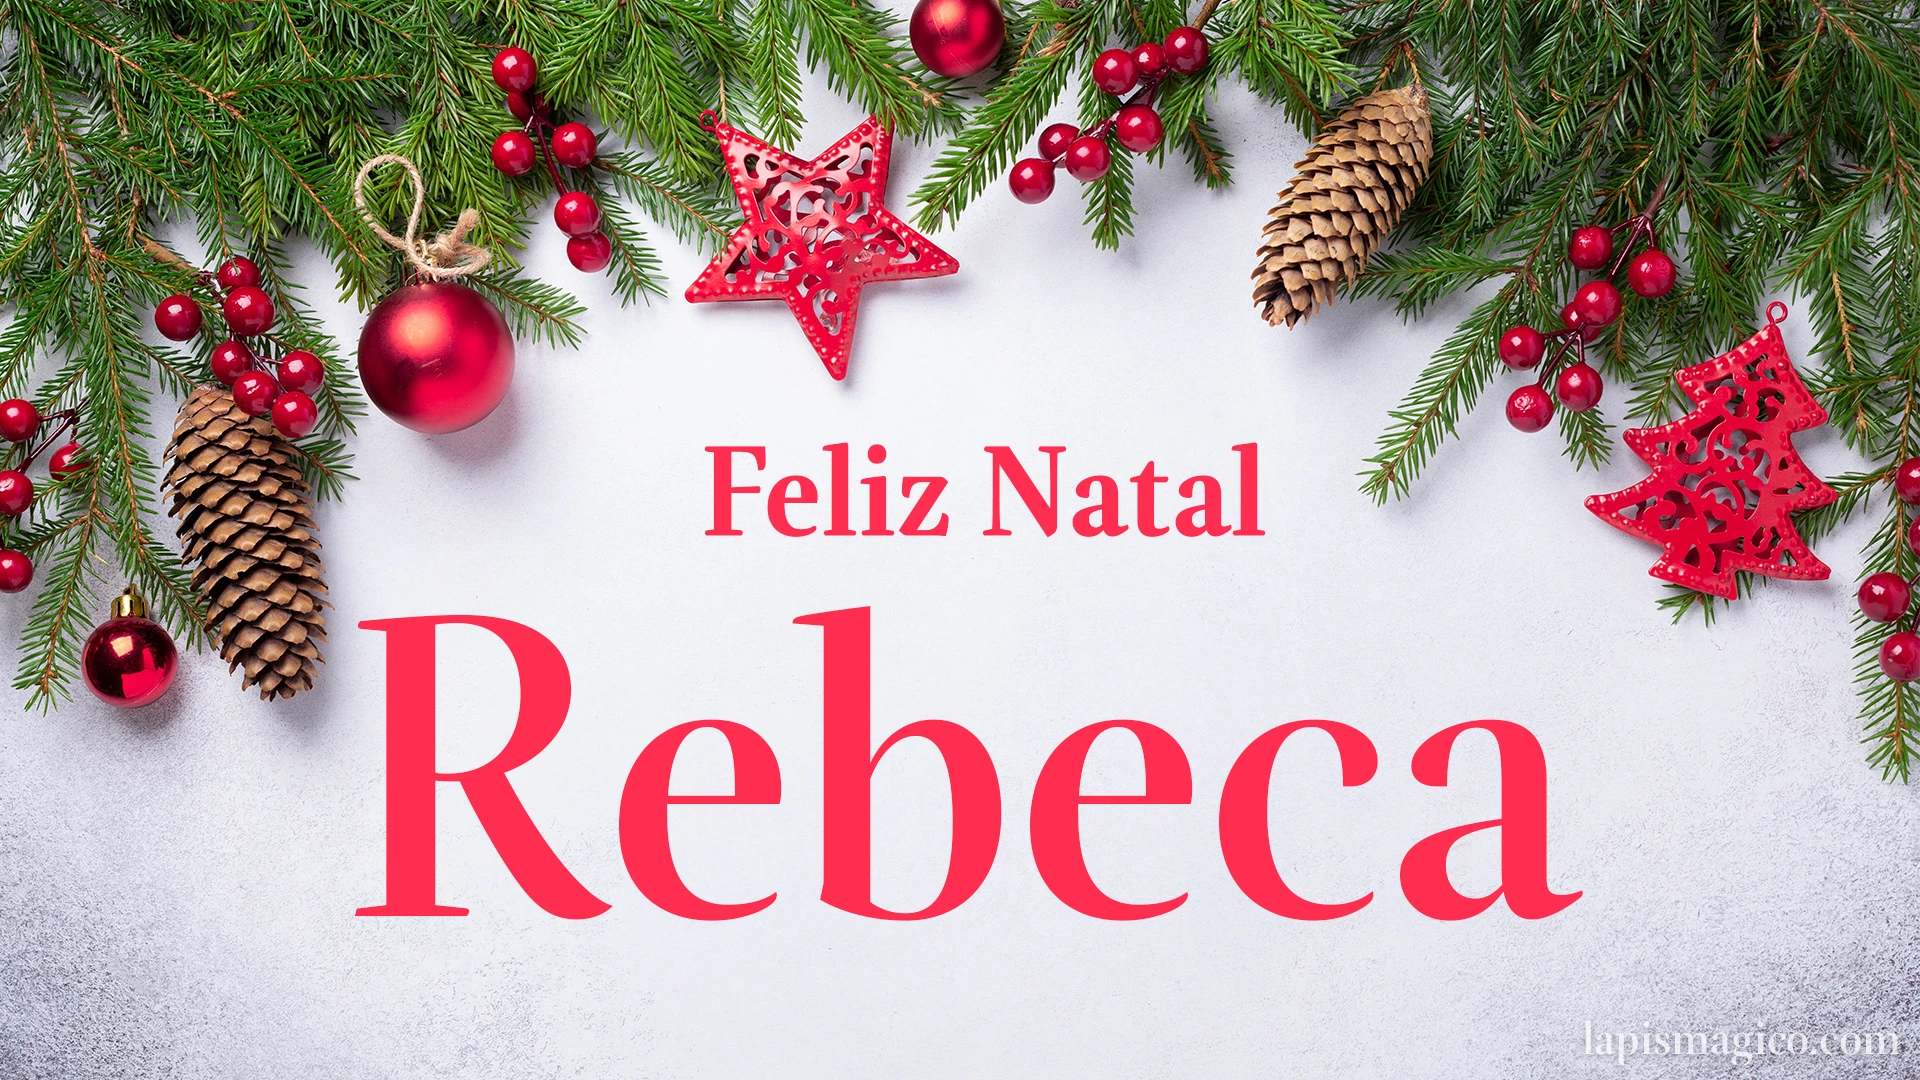 Oh Rebeca, cinco postais de Feliz Natal Postal com o teu nome